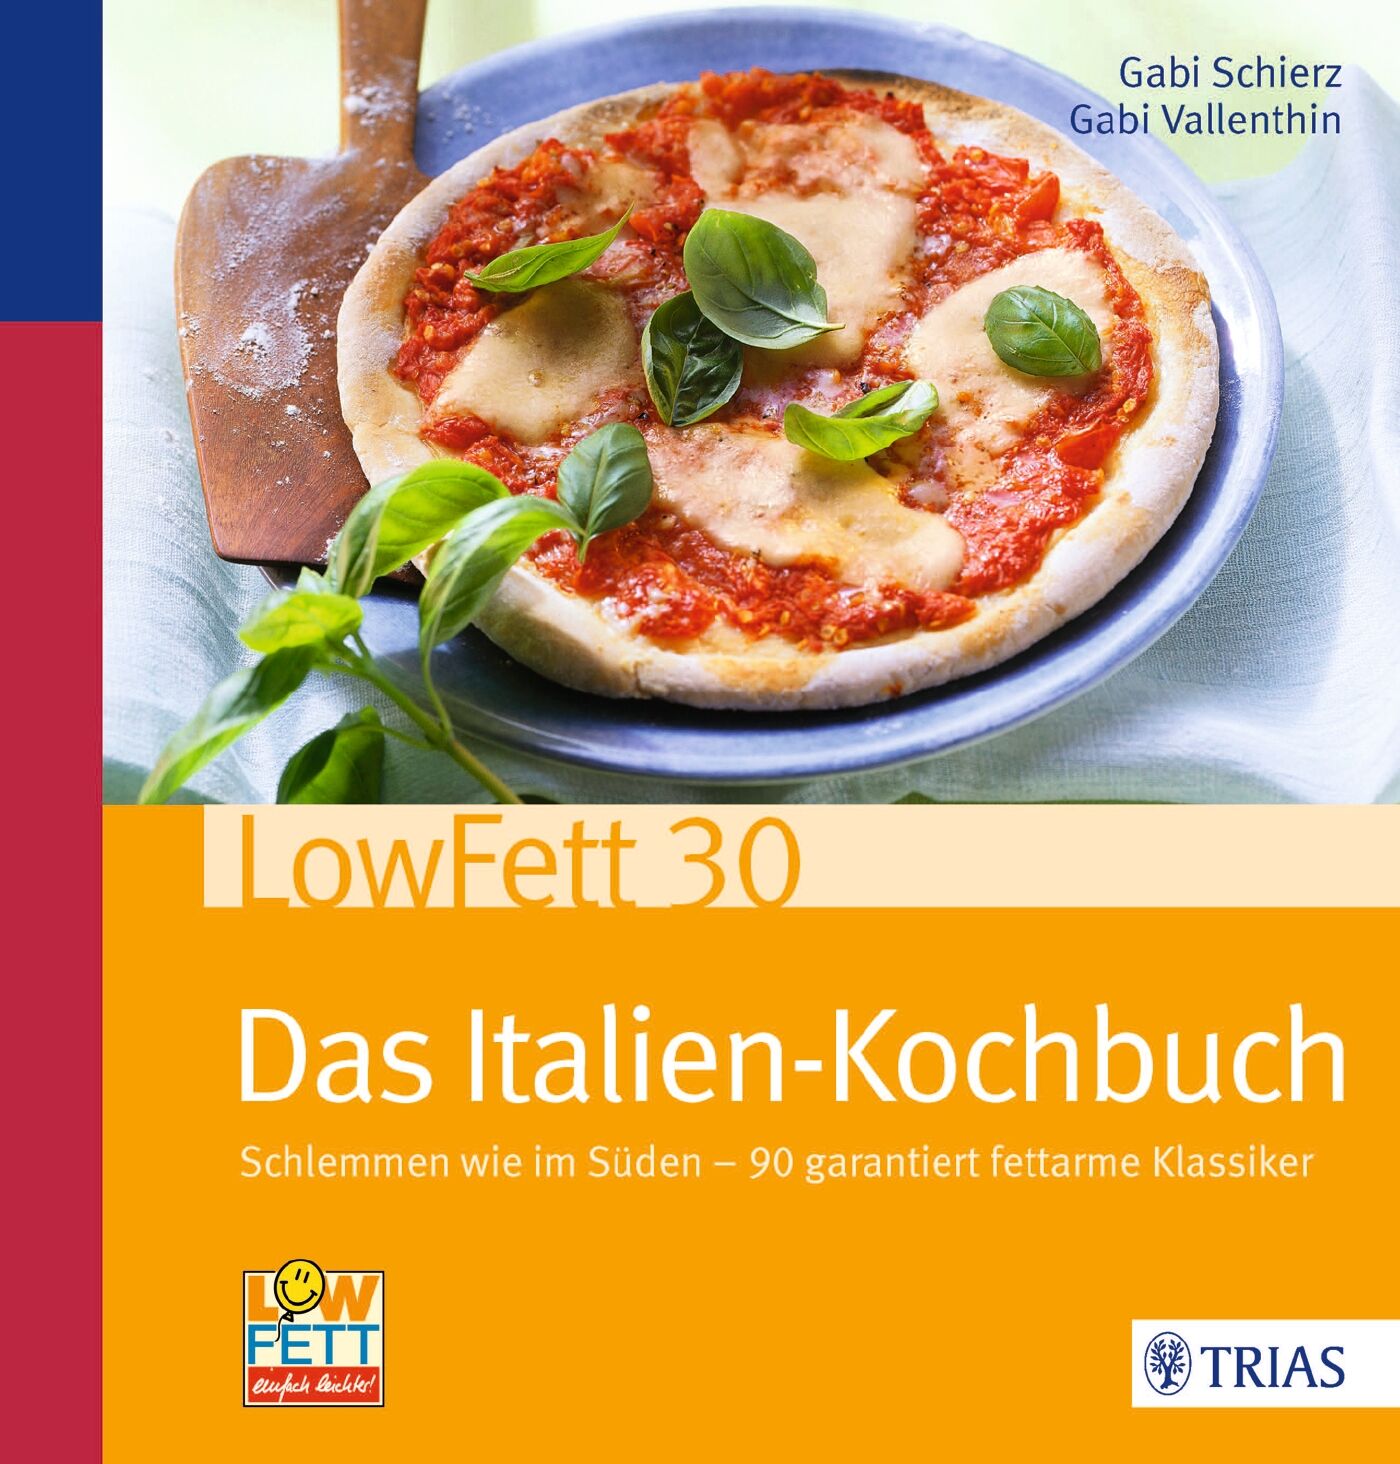 LowFett30 - Das Italien-Kochbuch, 9783830466857